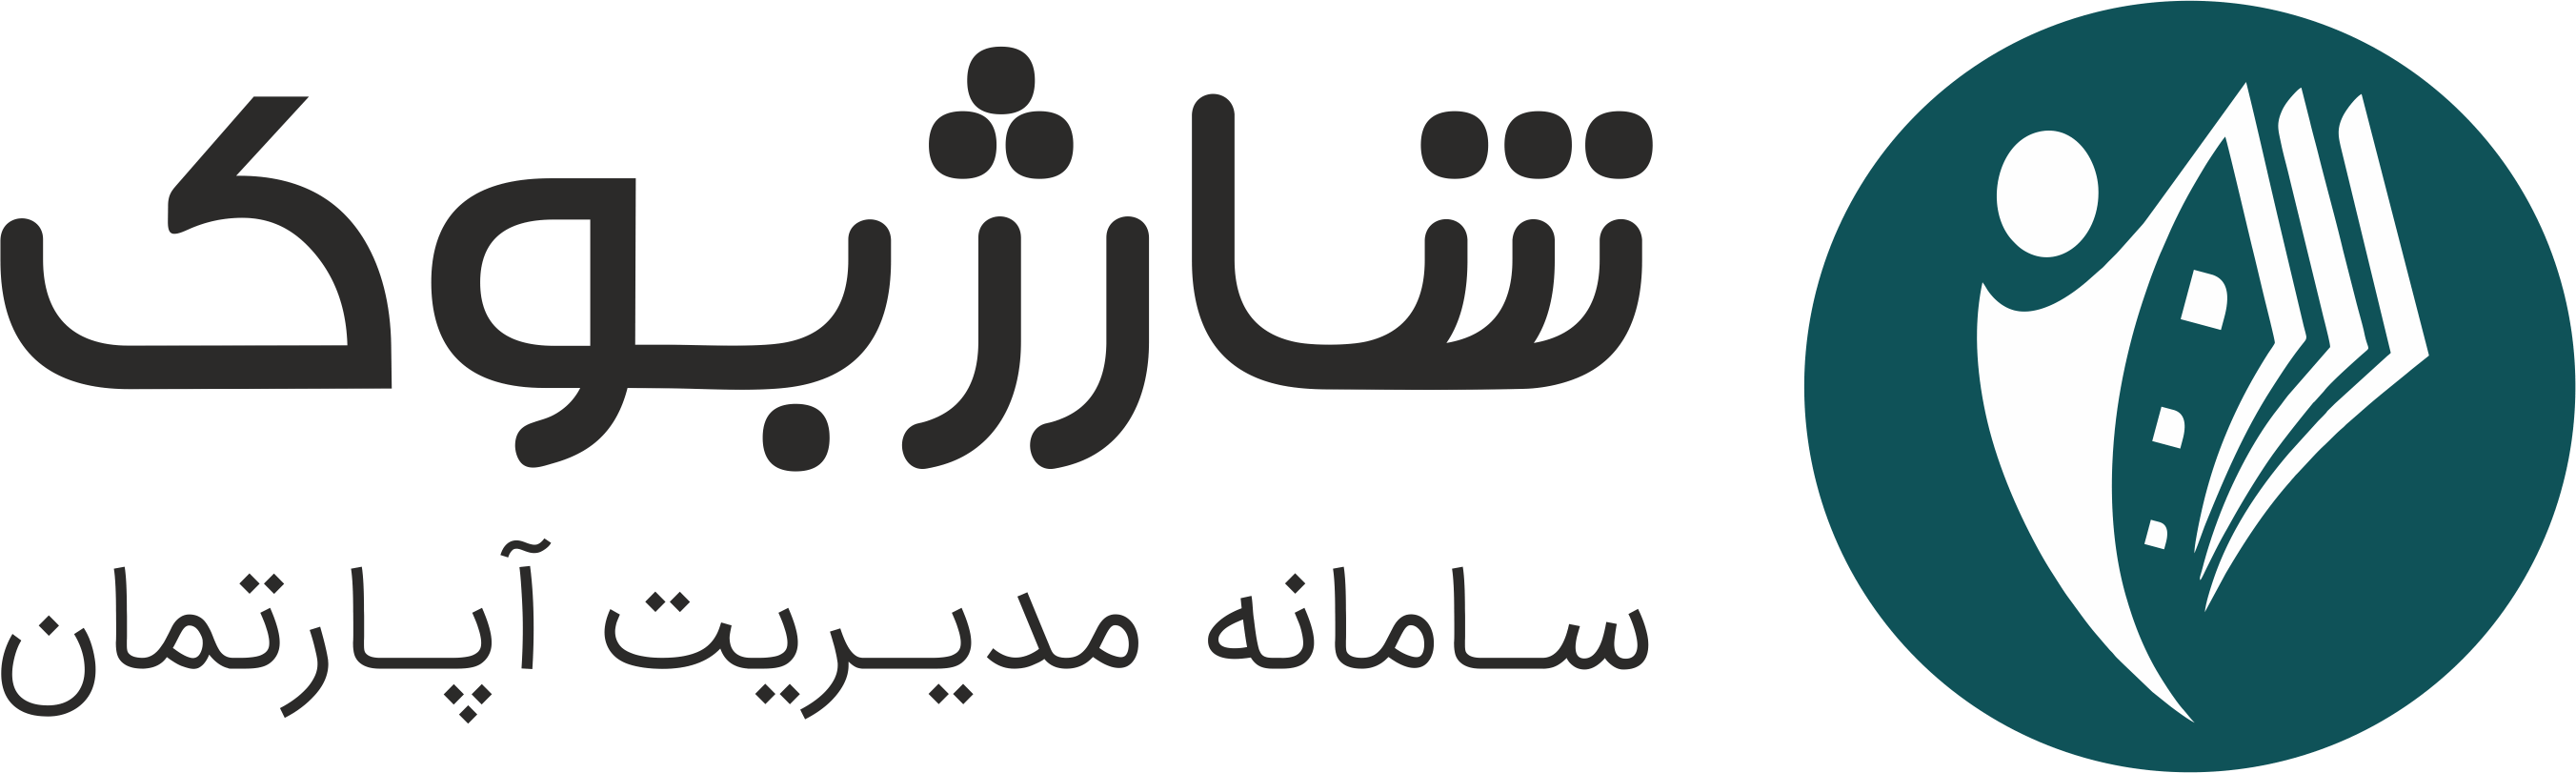 SharjBook Logo 